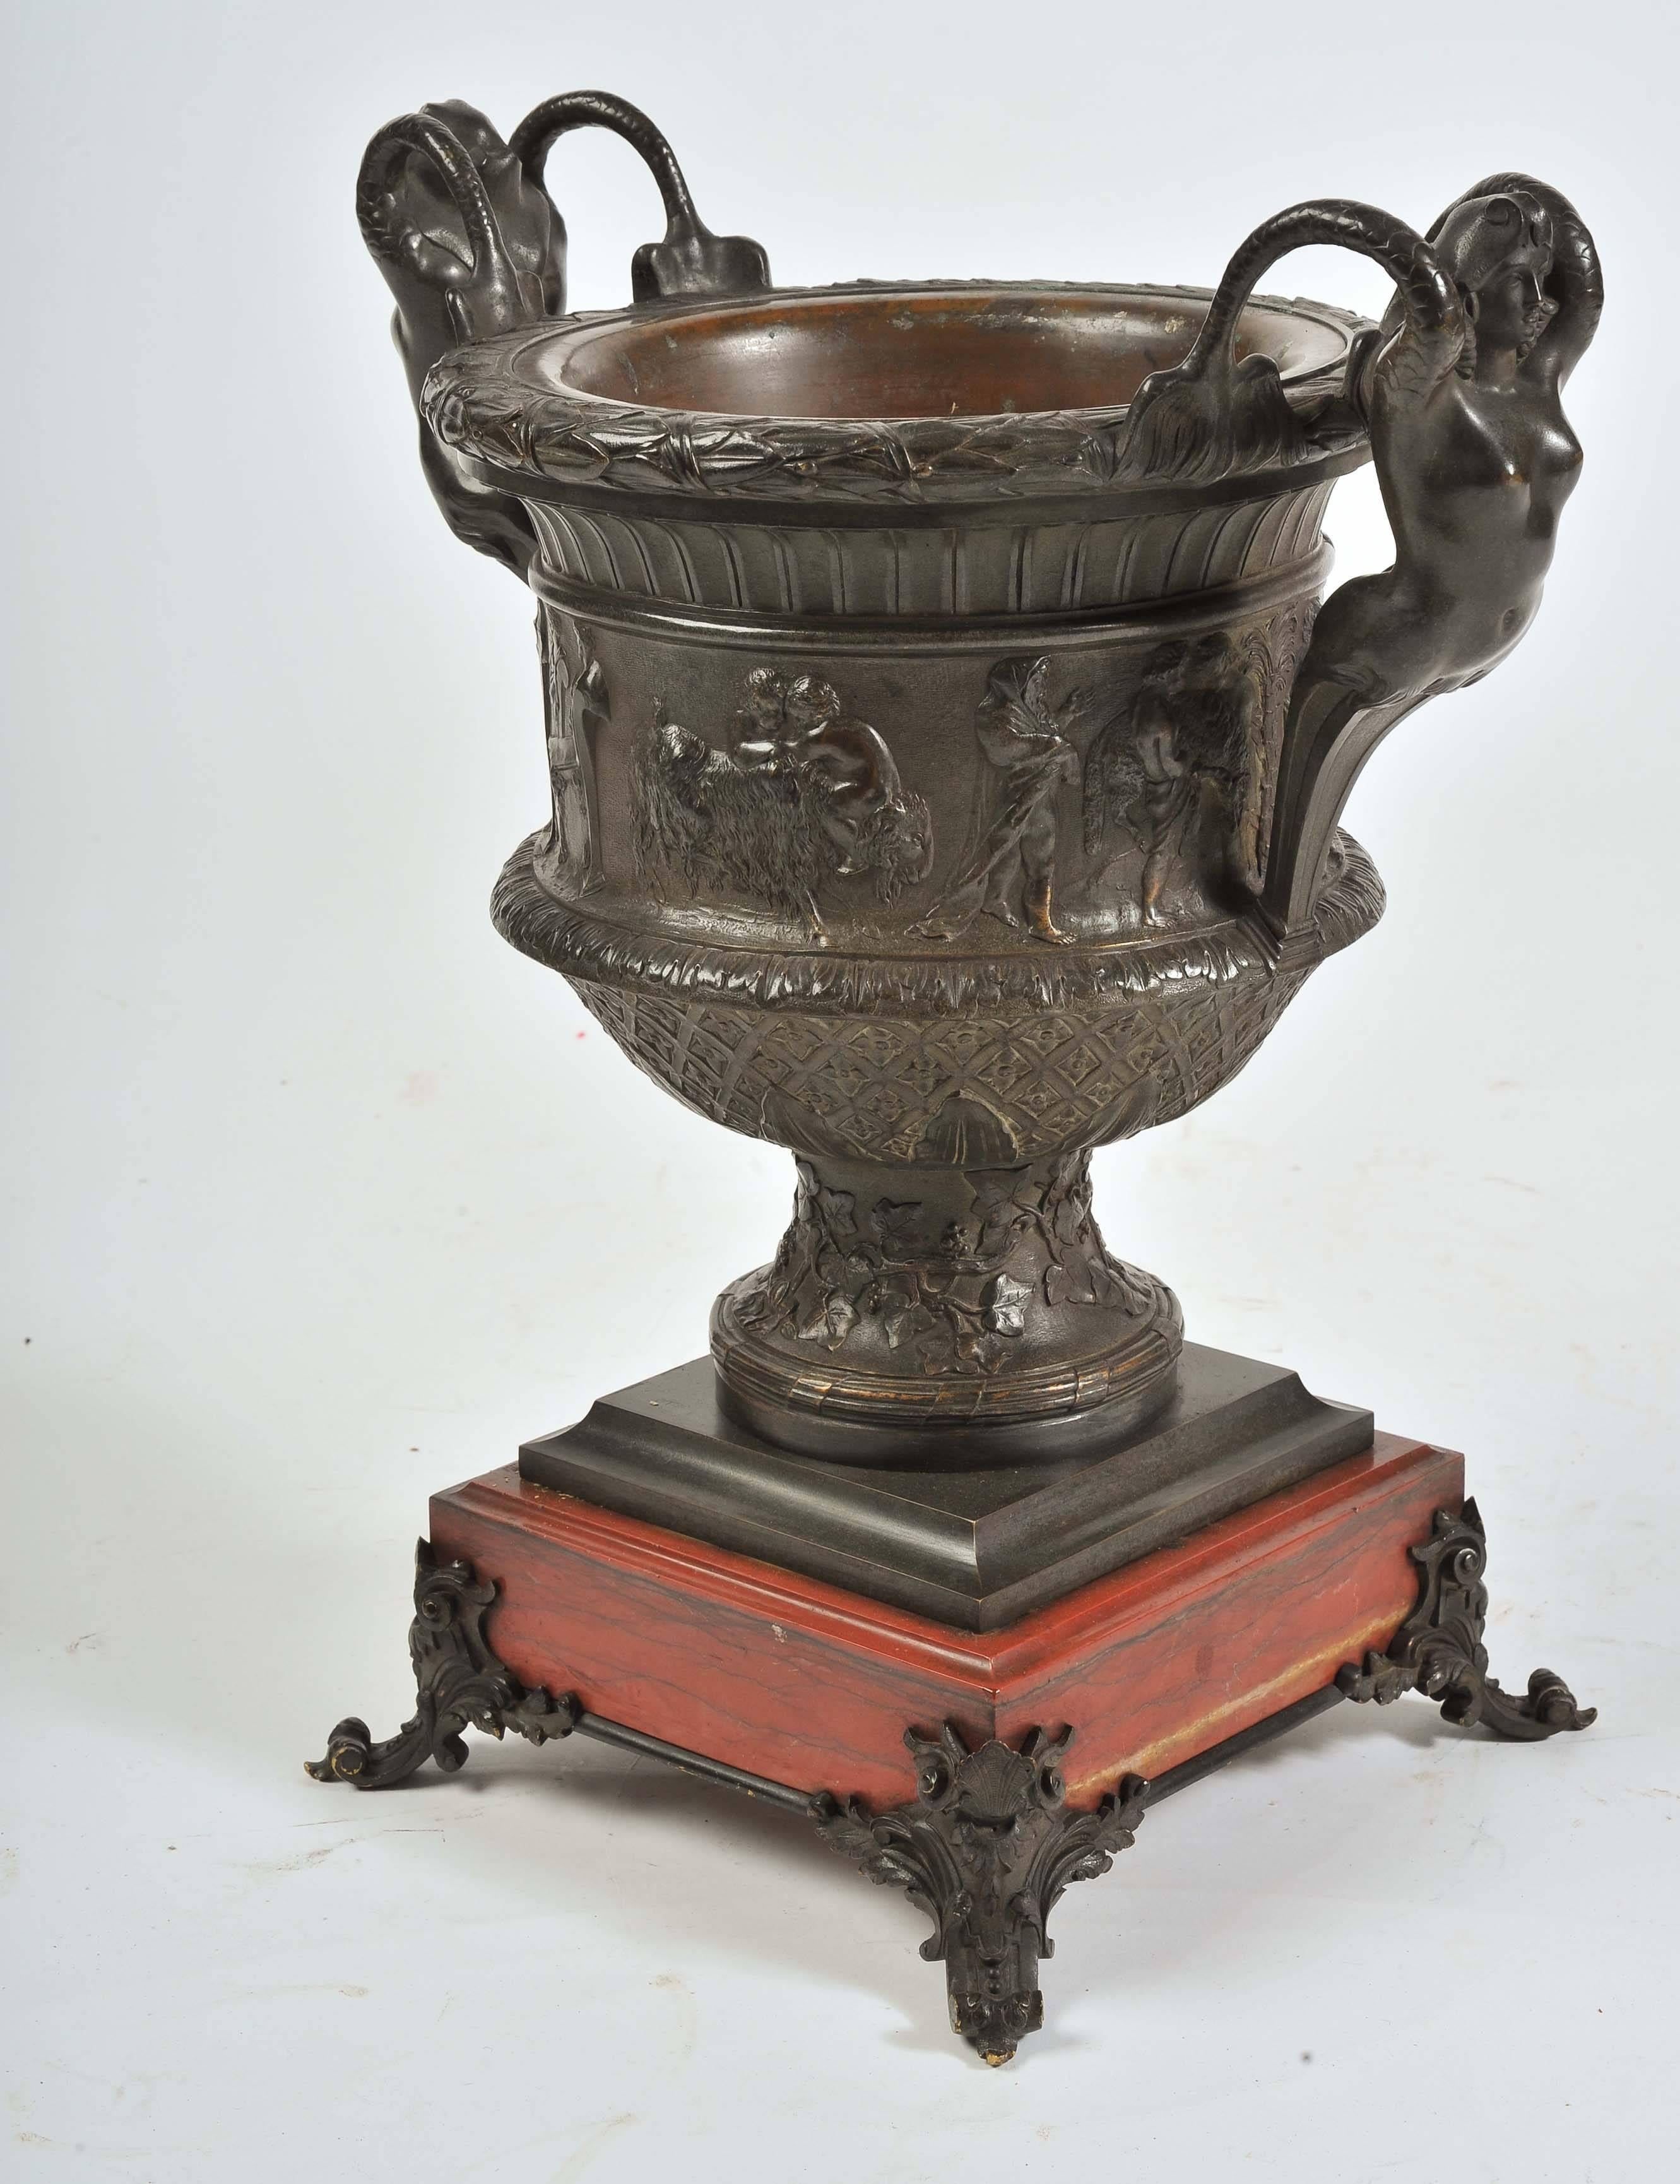 Une urne à deux anses en bronze de très bonne qualité, datant du XIXe siècle, avec des figures féminines nues de chaque côté. Des scènes classiques influencées par le bacchus entourent l'urne, la base est décorée de feuillages et repose sur une